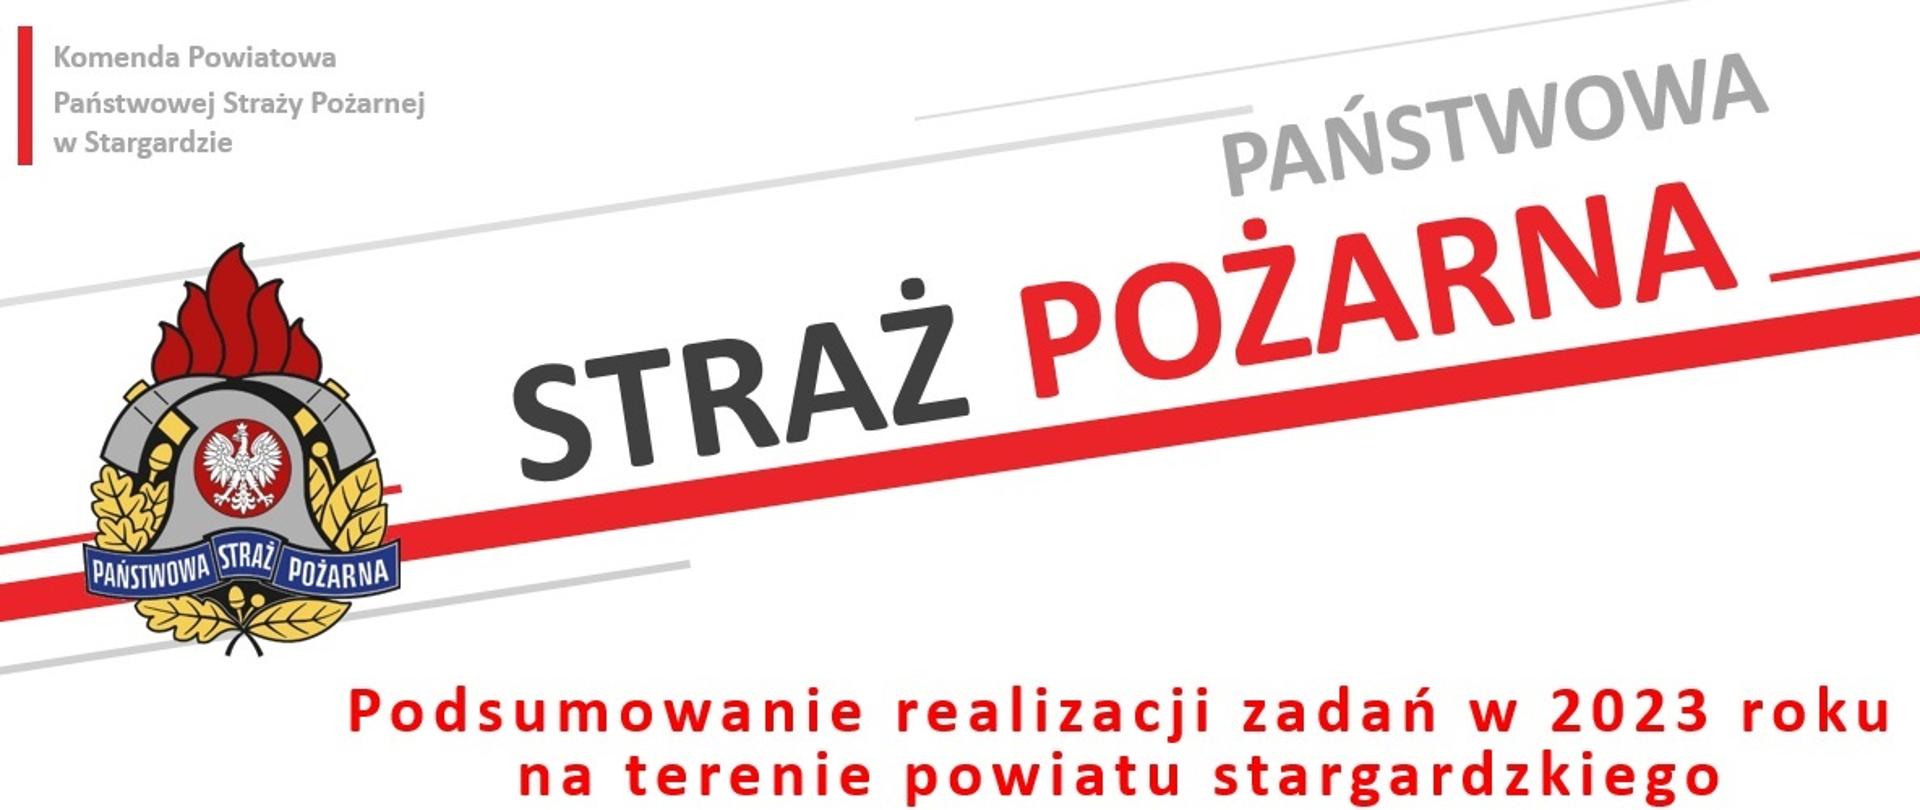 plansza z napisem "podsumowanie realizacji zadań w 2023 roku na terenie powiatu stargardzkiego".